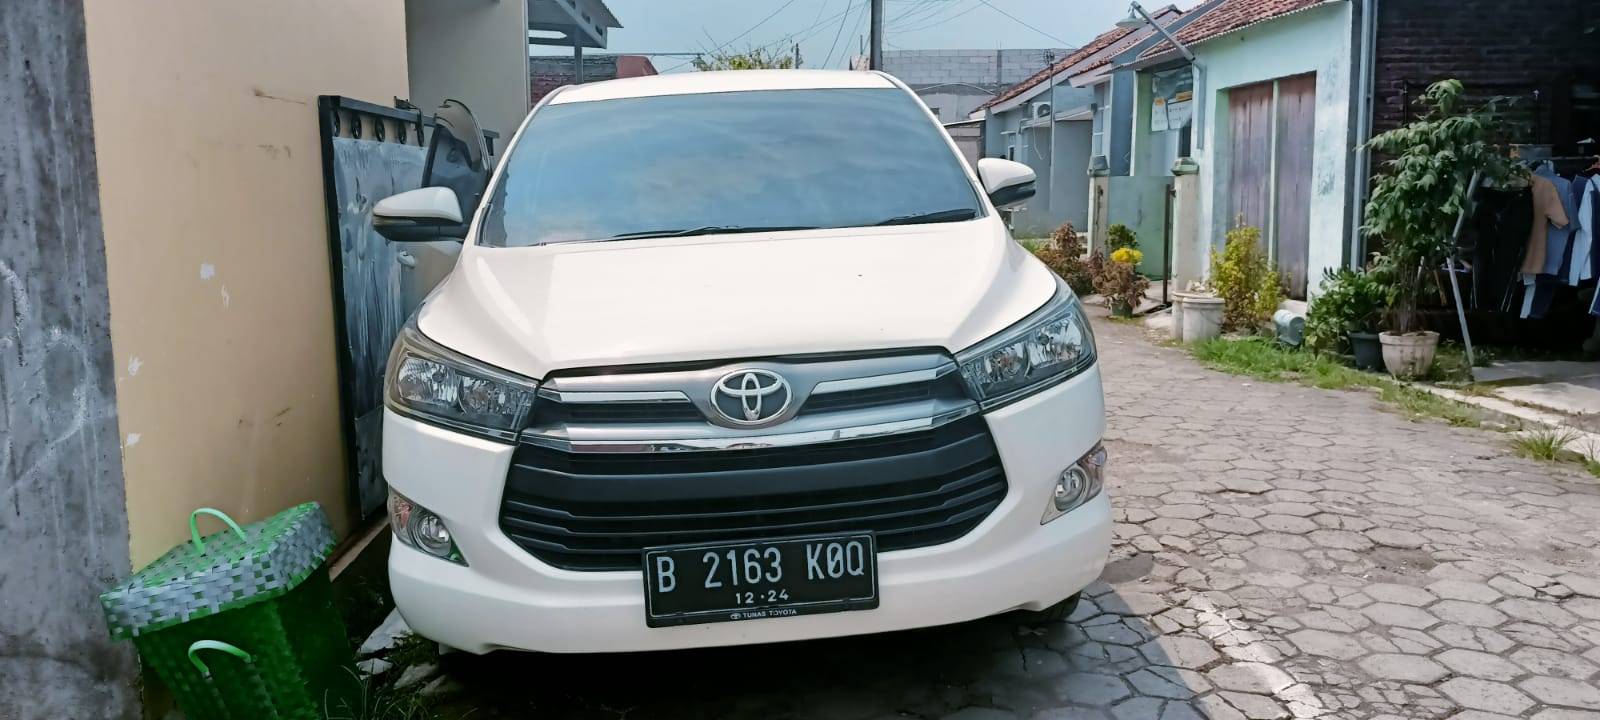 2019 Toyota Kijang Innova REBORN 2.4 G AT DIESEL LUX REBORN 2.4 G AT DIESEL LUX bekas